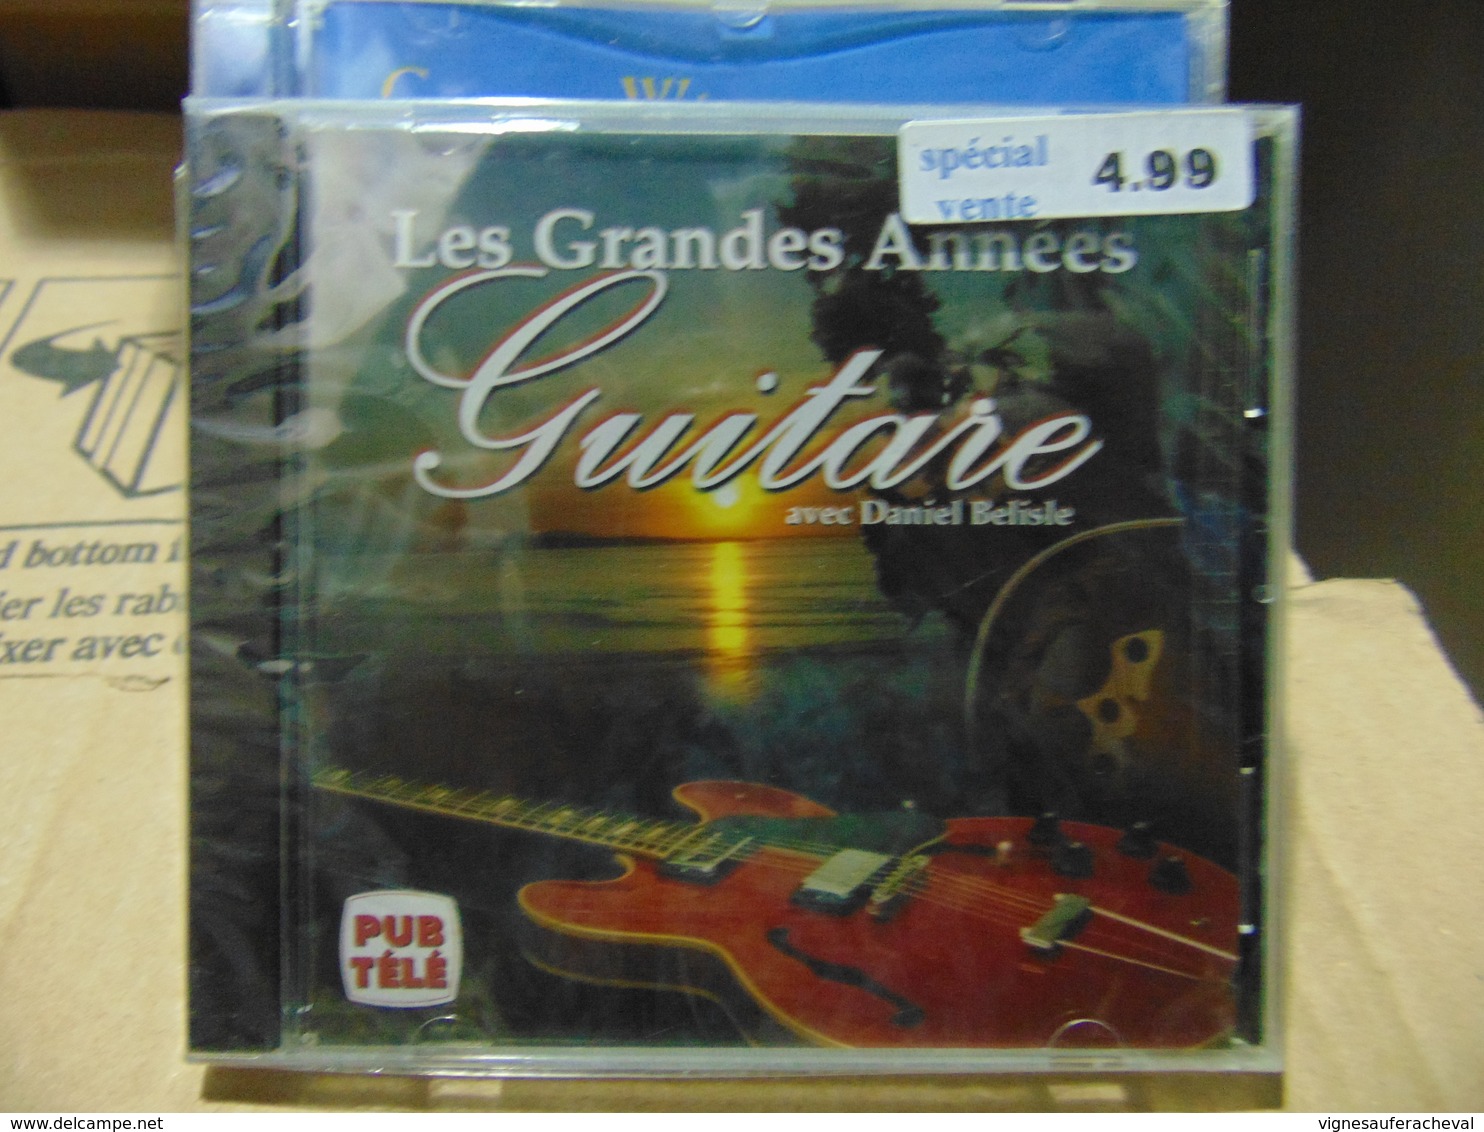 Daniel Belisle-Les Grandes Années Guitare - Wereldmuziek